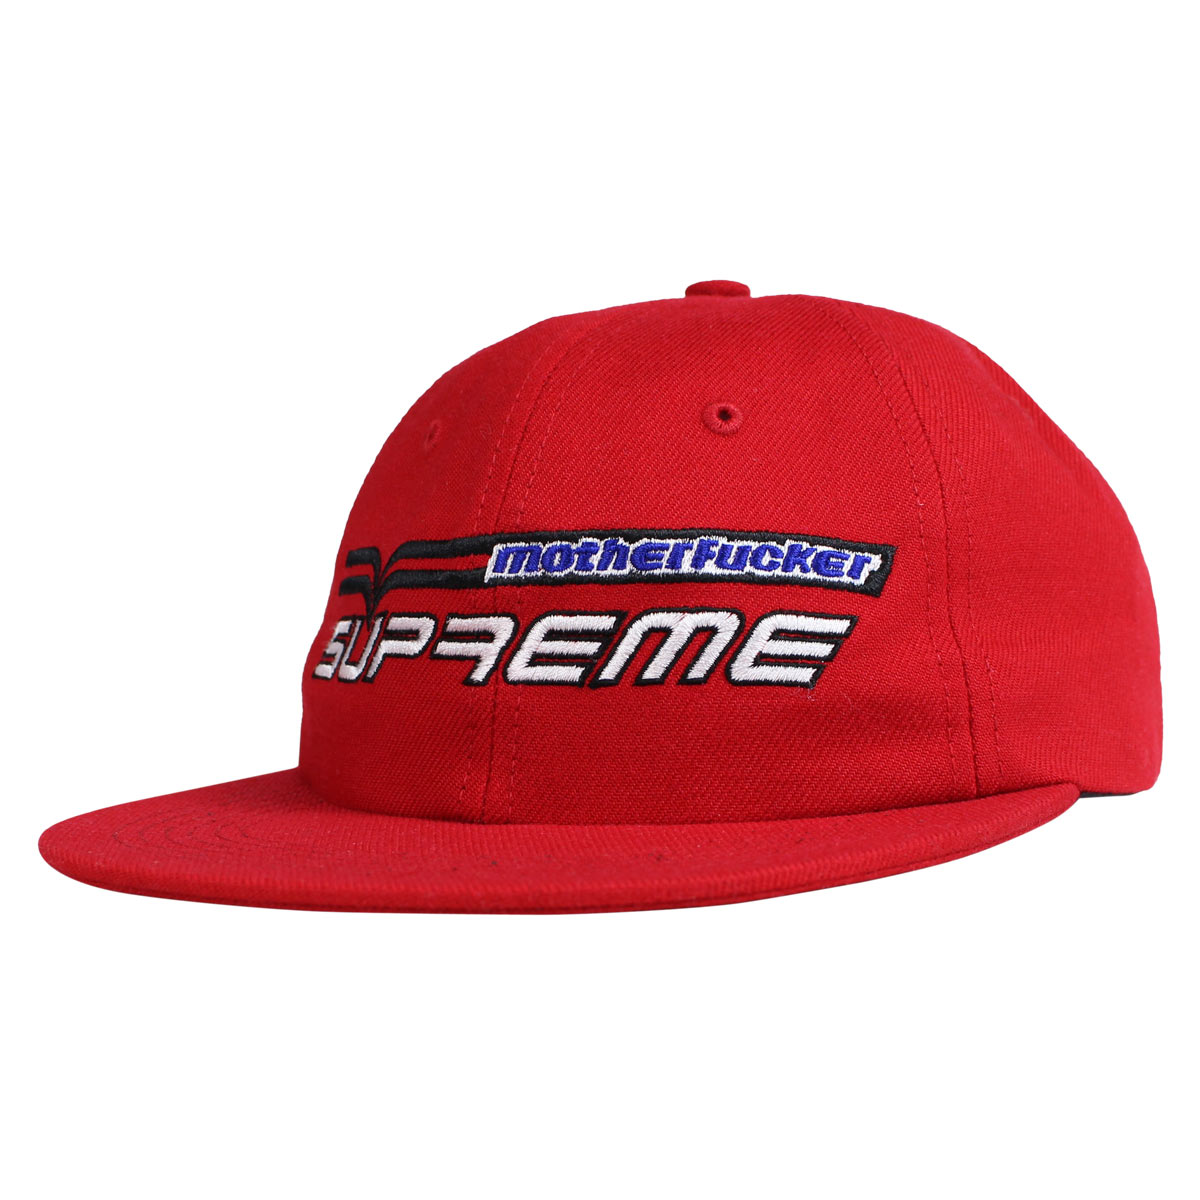 Supreme シュプリーム キャップ 帽子 スナップバック メンズ レディース MOTHERFUCKER 6-PANEL ブラック レッド ブルー 黒